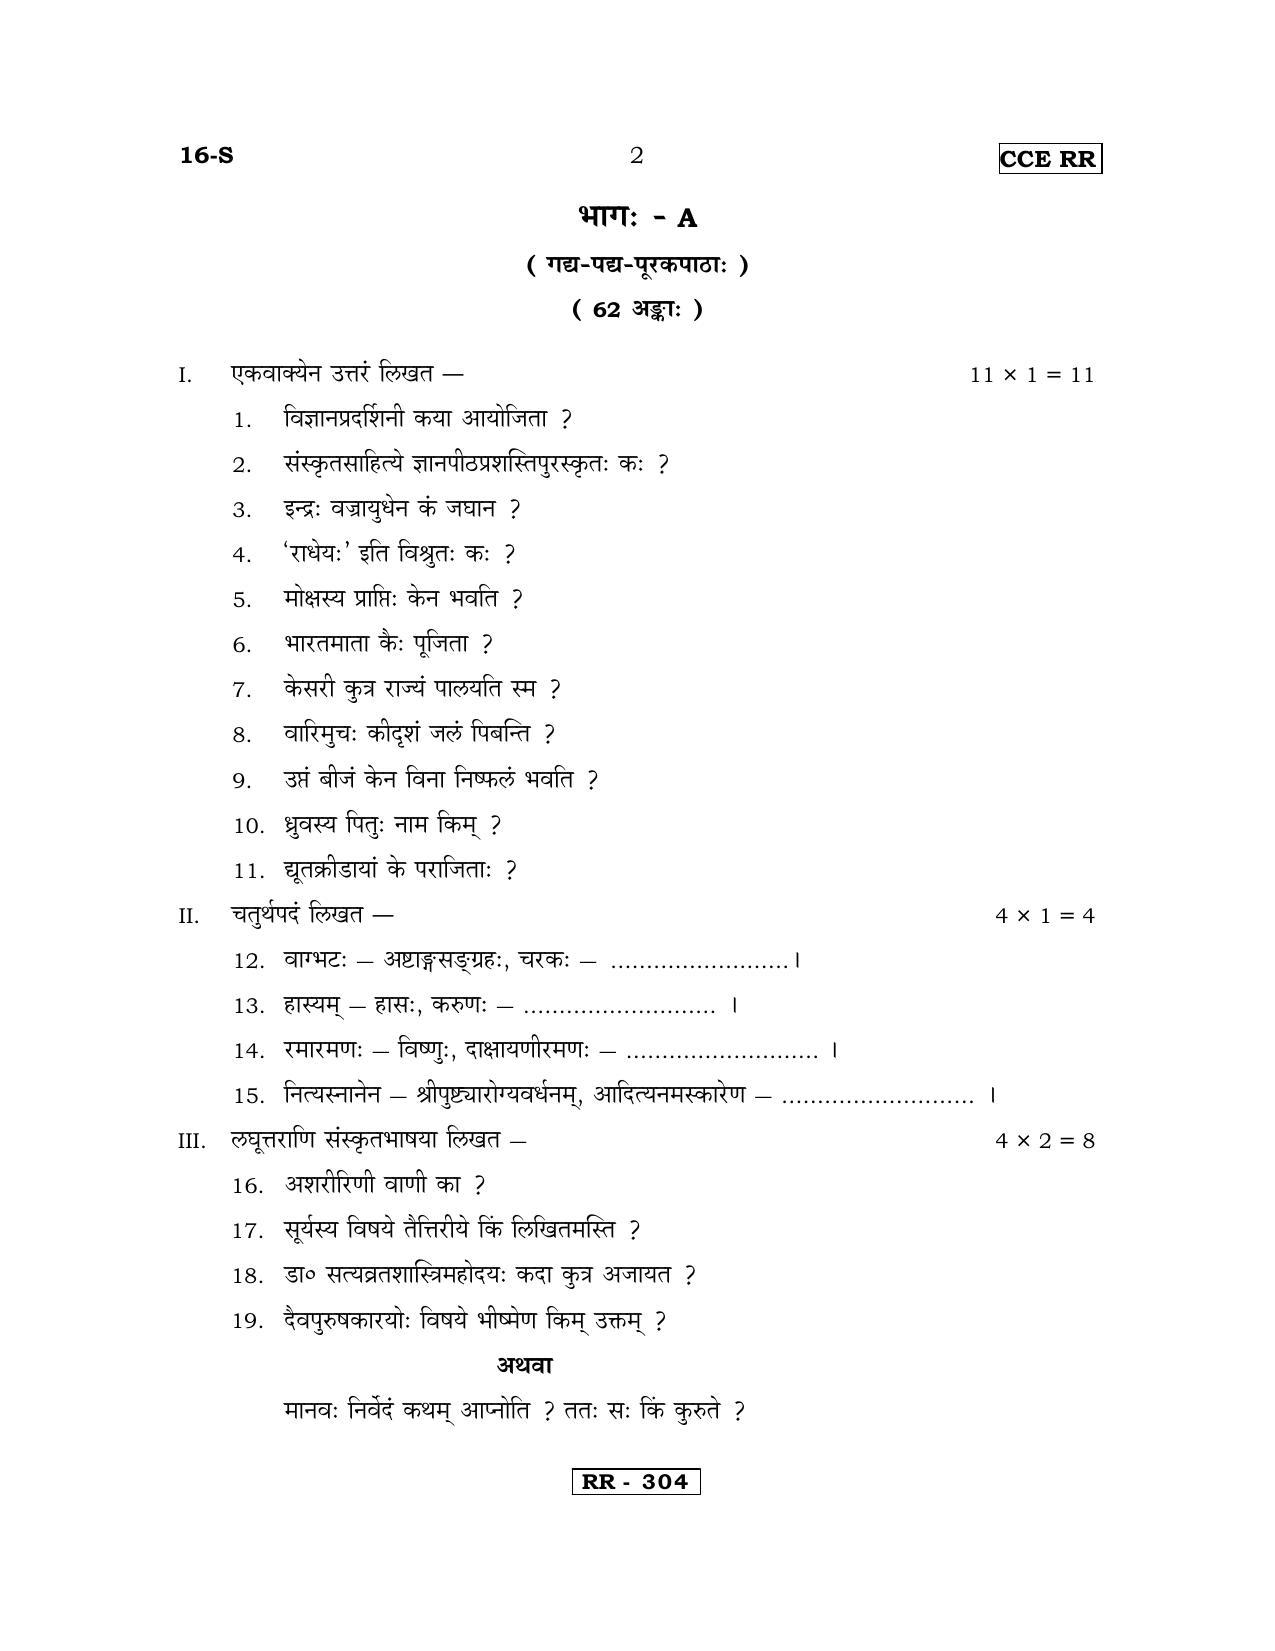 Karnataka SSLC Sanskrit - First Language - SANSKRIT (16-S-CCE RR UNREVISED_17) April 2018 Question Paper - Page 2